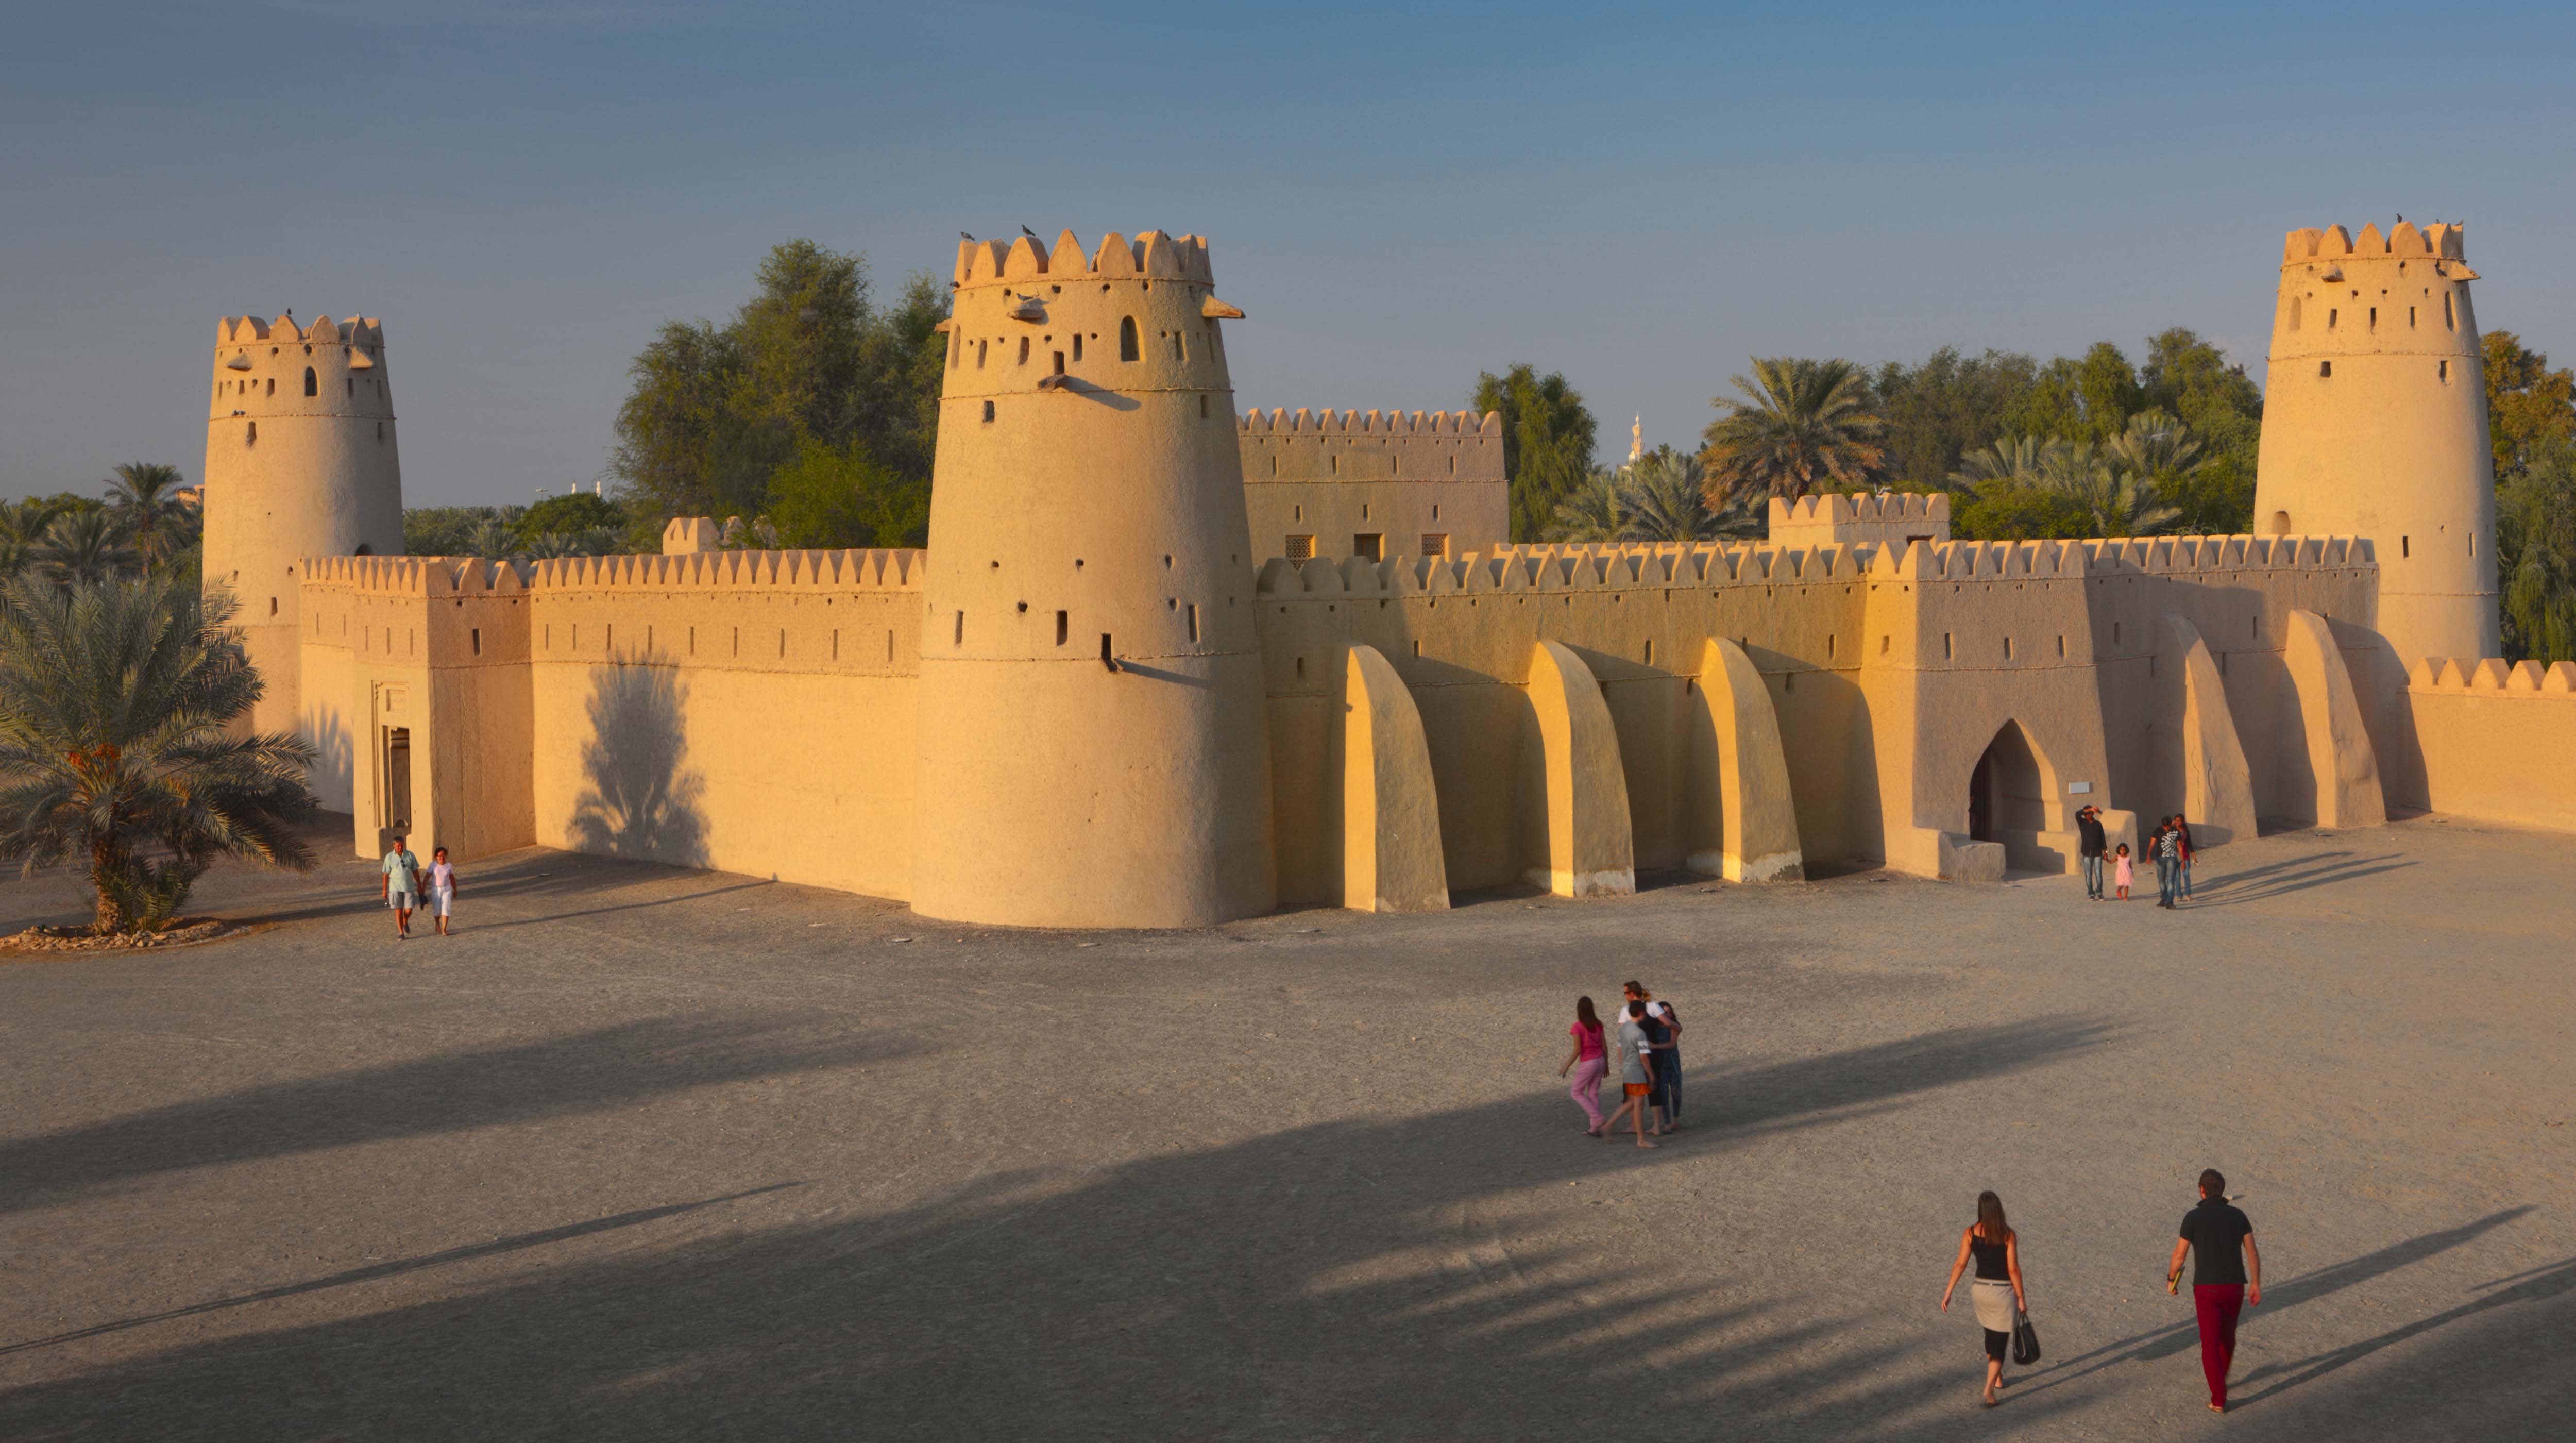 מבצר אל-ג'אהילי (Al Jahili Fort)